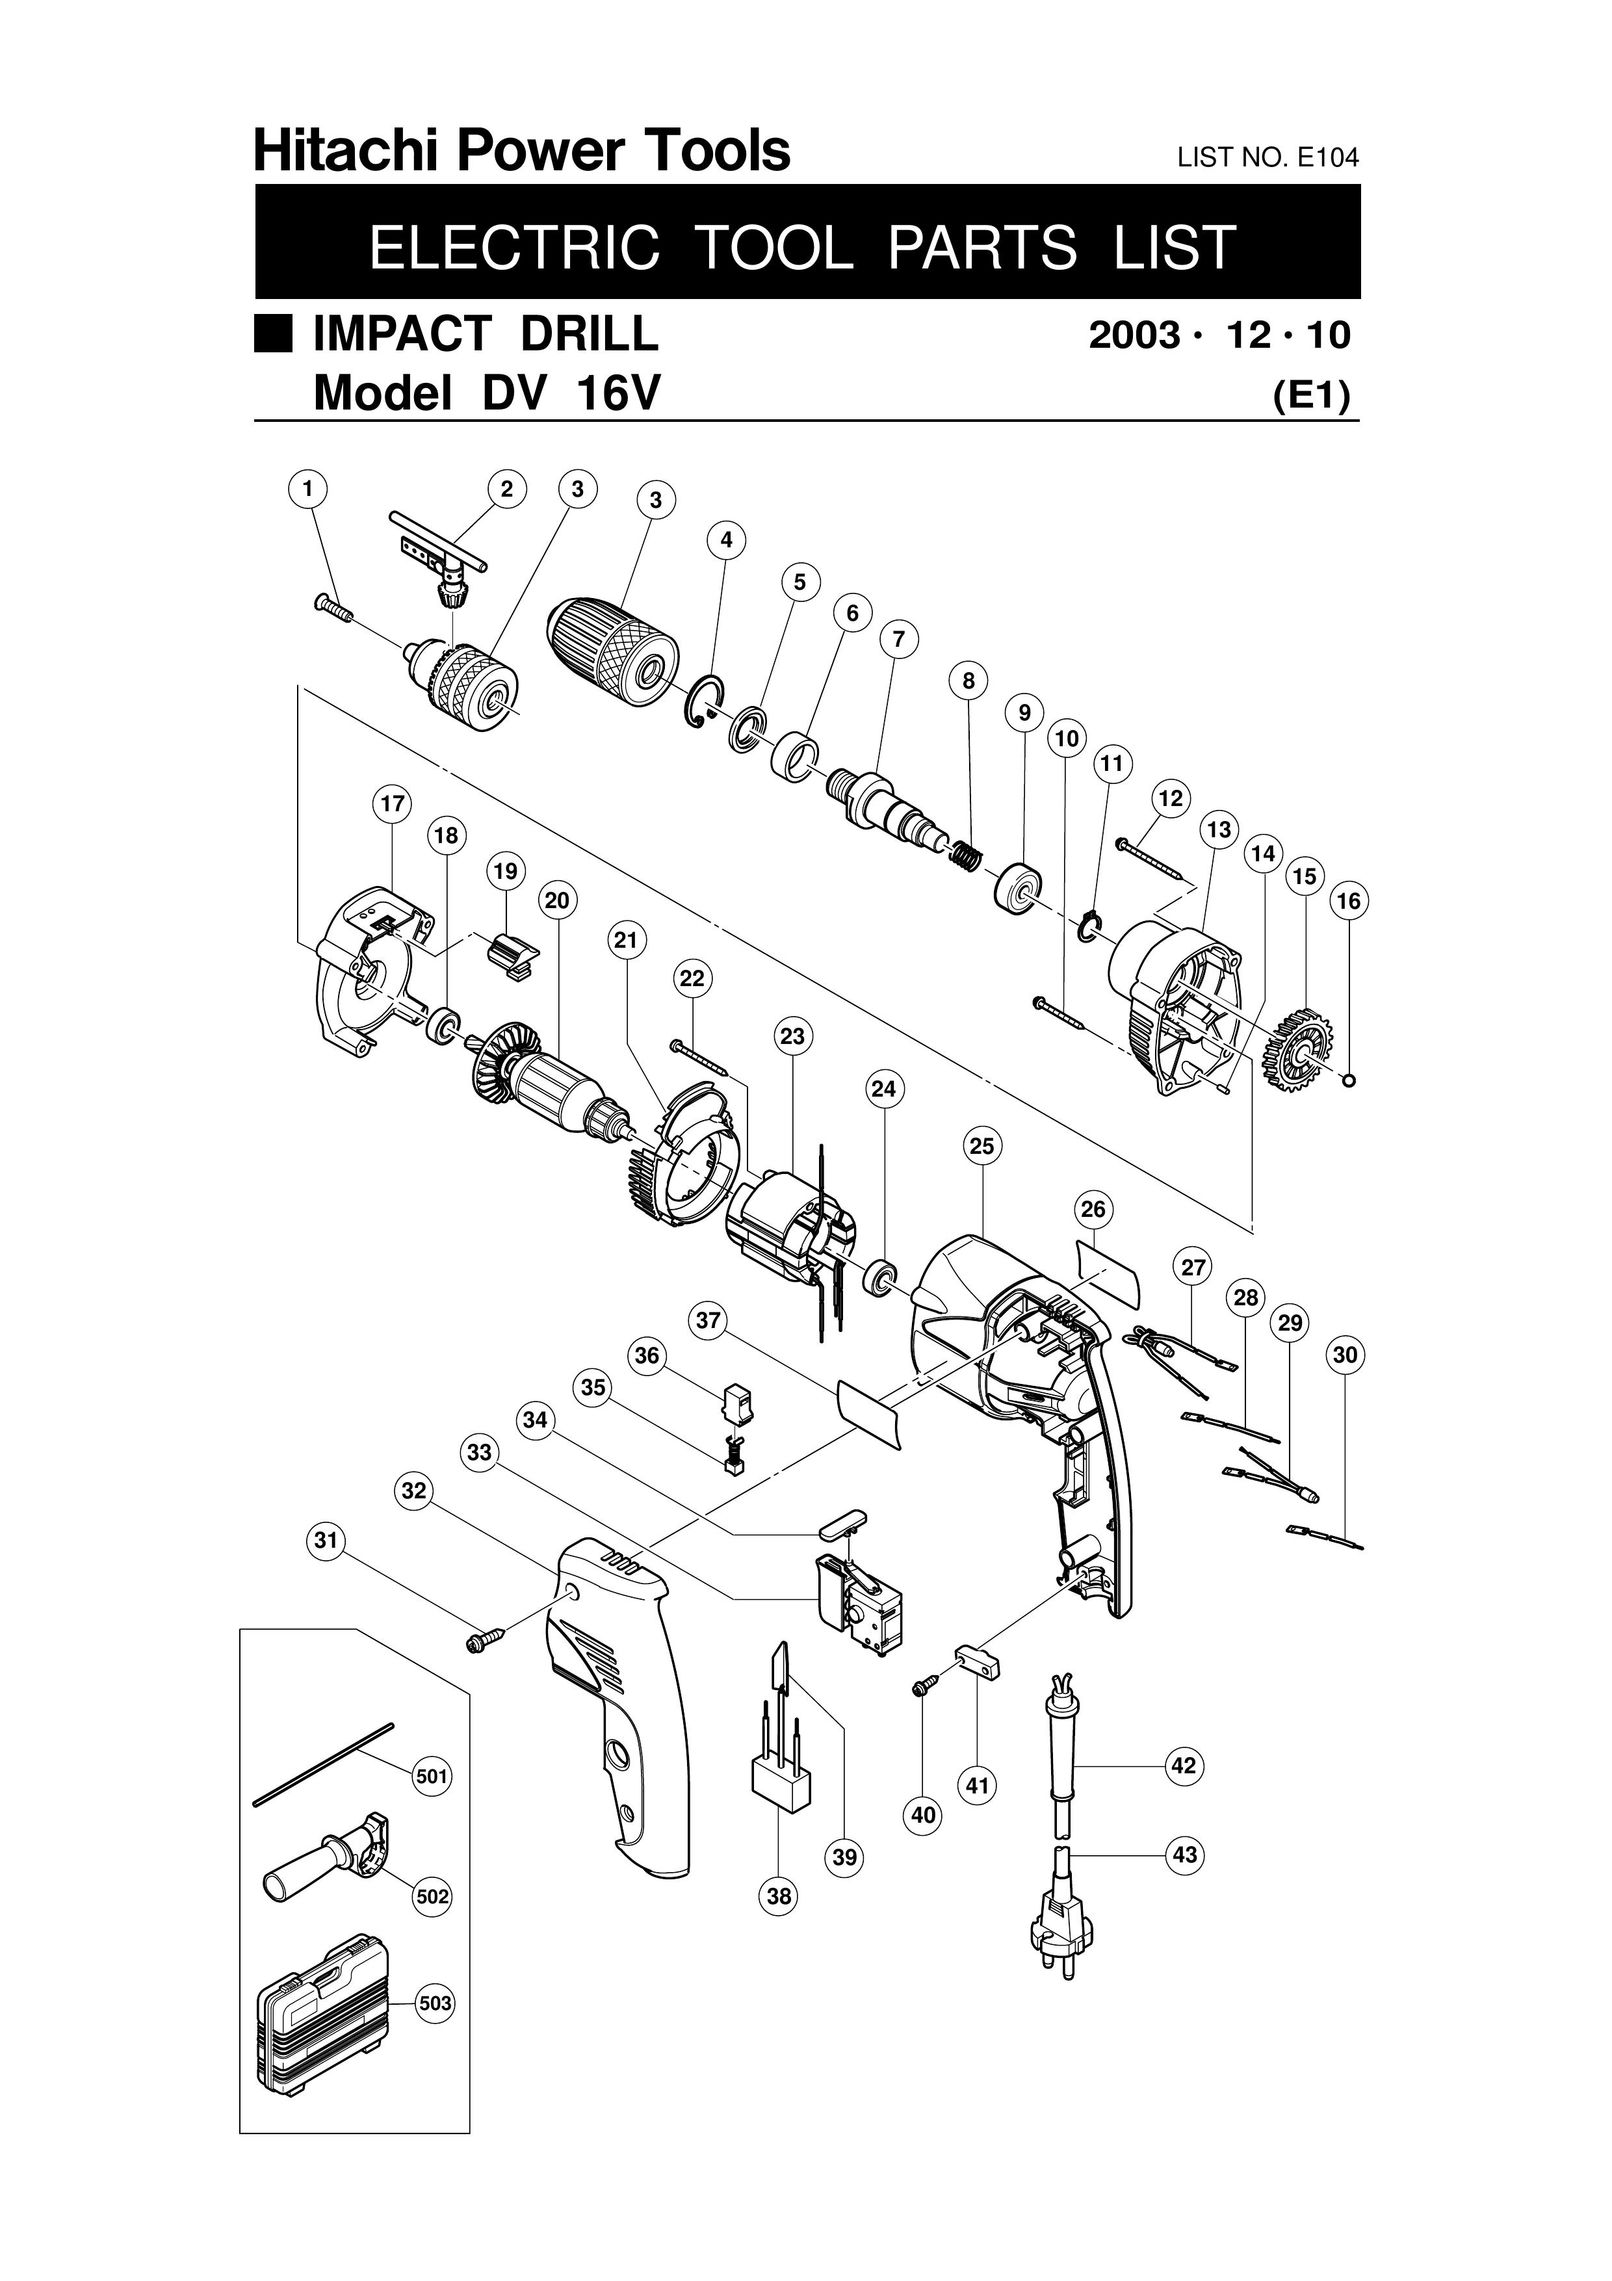 Hitachi e104 Cordless Drill User Manual